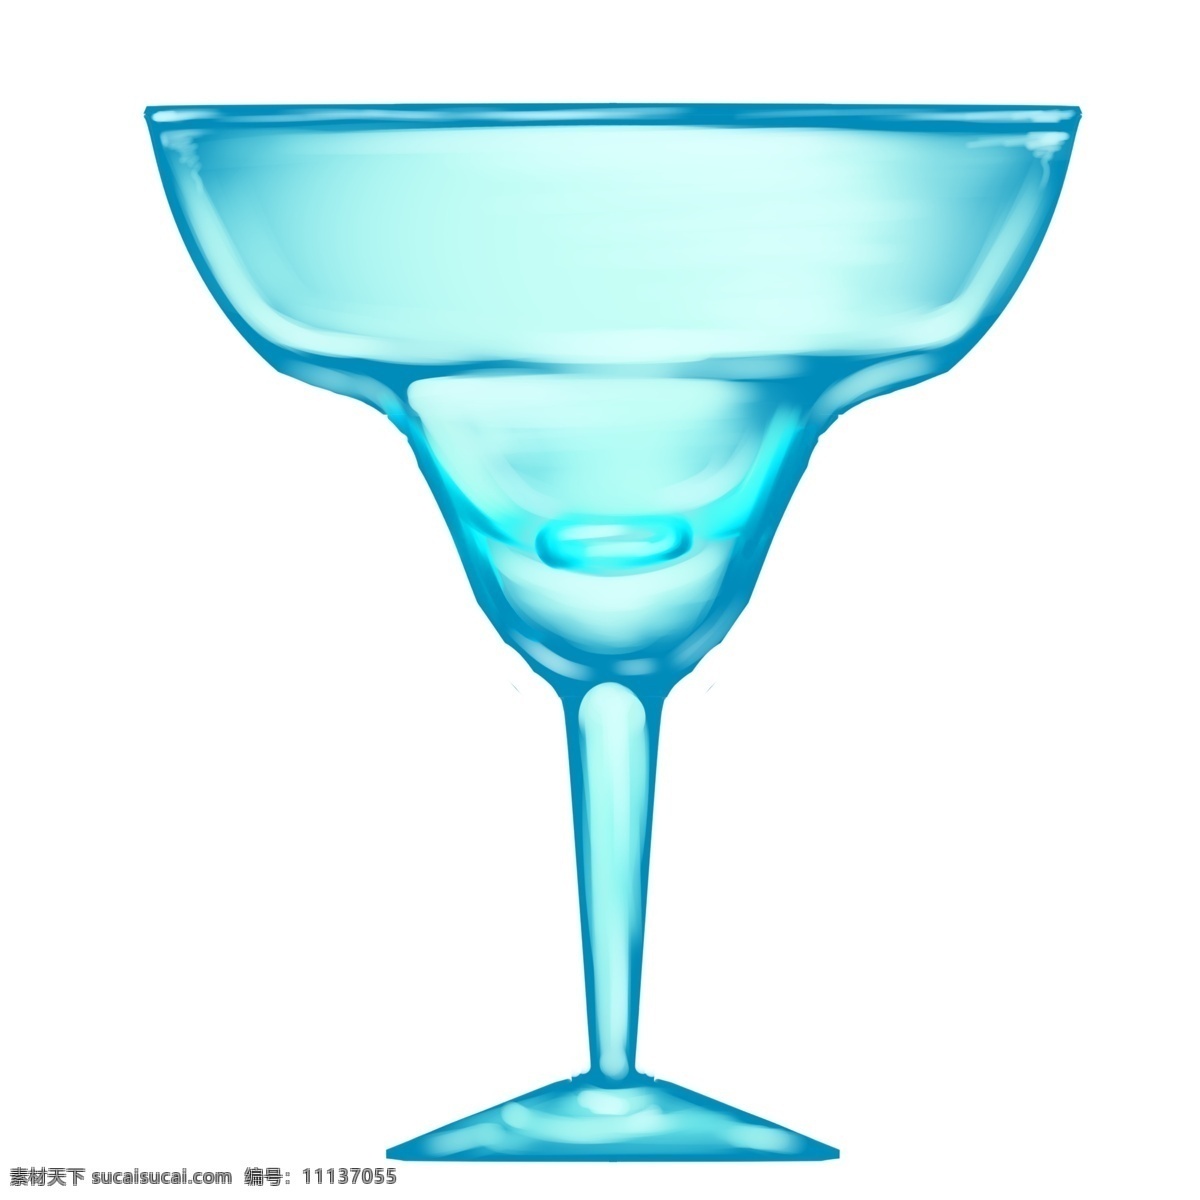 蓝色 玻璃 三角 杯 蓝色的玻璃 玻璃制品 卡通玻璃插画 三角杯 酒杯 杯子 玻璃酒杯插画 玻璃杯具